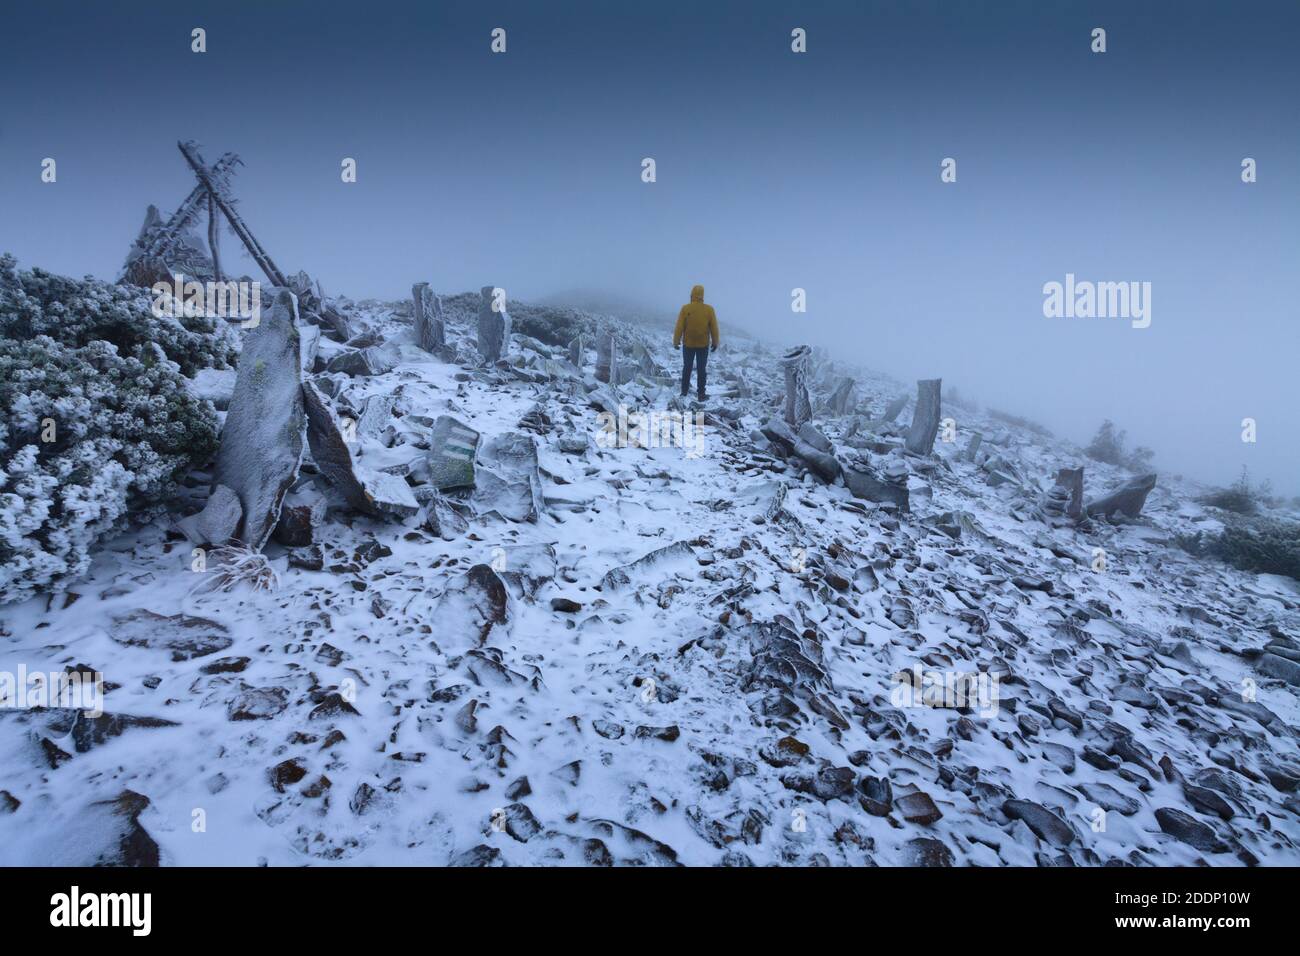 Un solitaire Wanderer dans un paysage enneigé. Solitude, montagnes, hiver, brume, neige. Banque D'Images